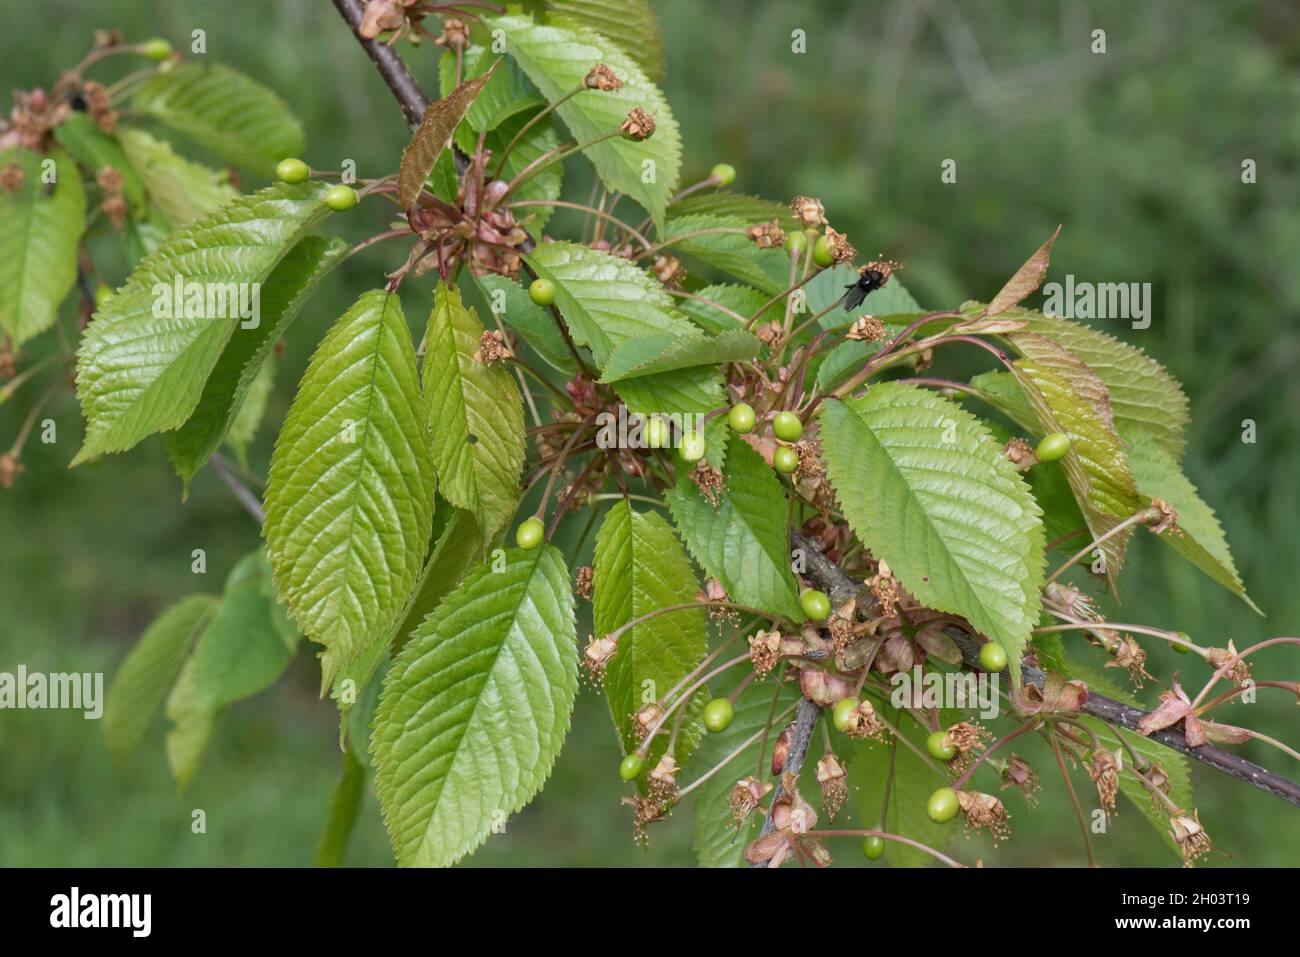 Jeunes fruits ou villettes de cerisier sauvage (Prunus avium) avec des feuilles matures au printemps, Berkshire, avril Banque D'Images